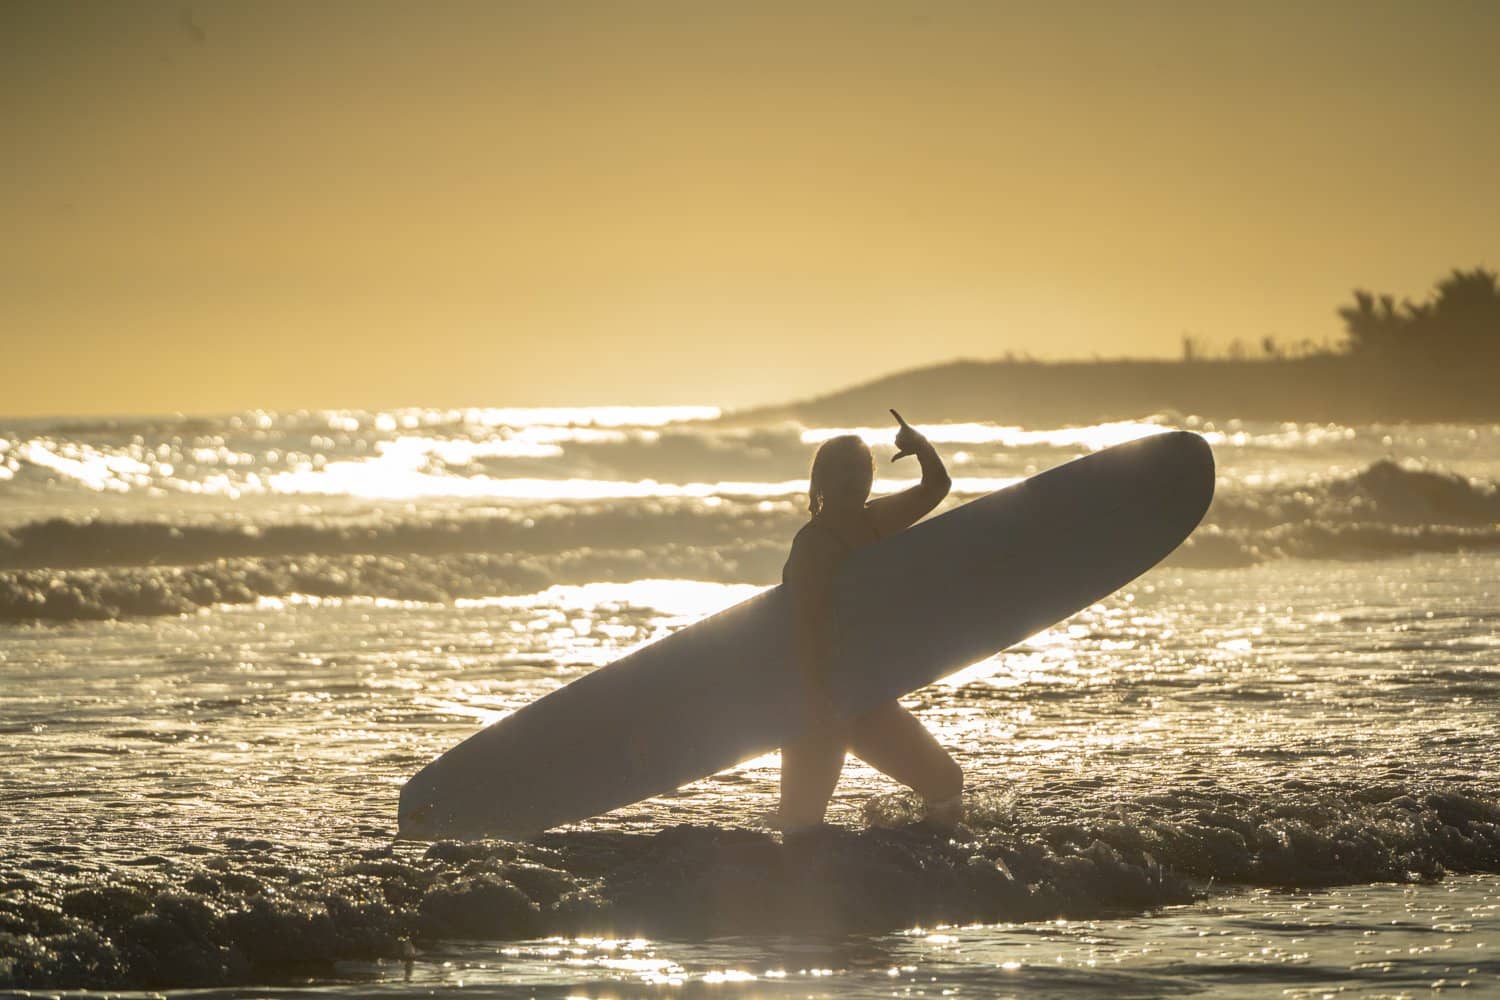 Surf's up - El Salvador Surf & Yoga Retreat